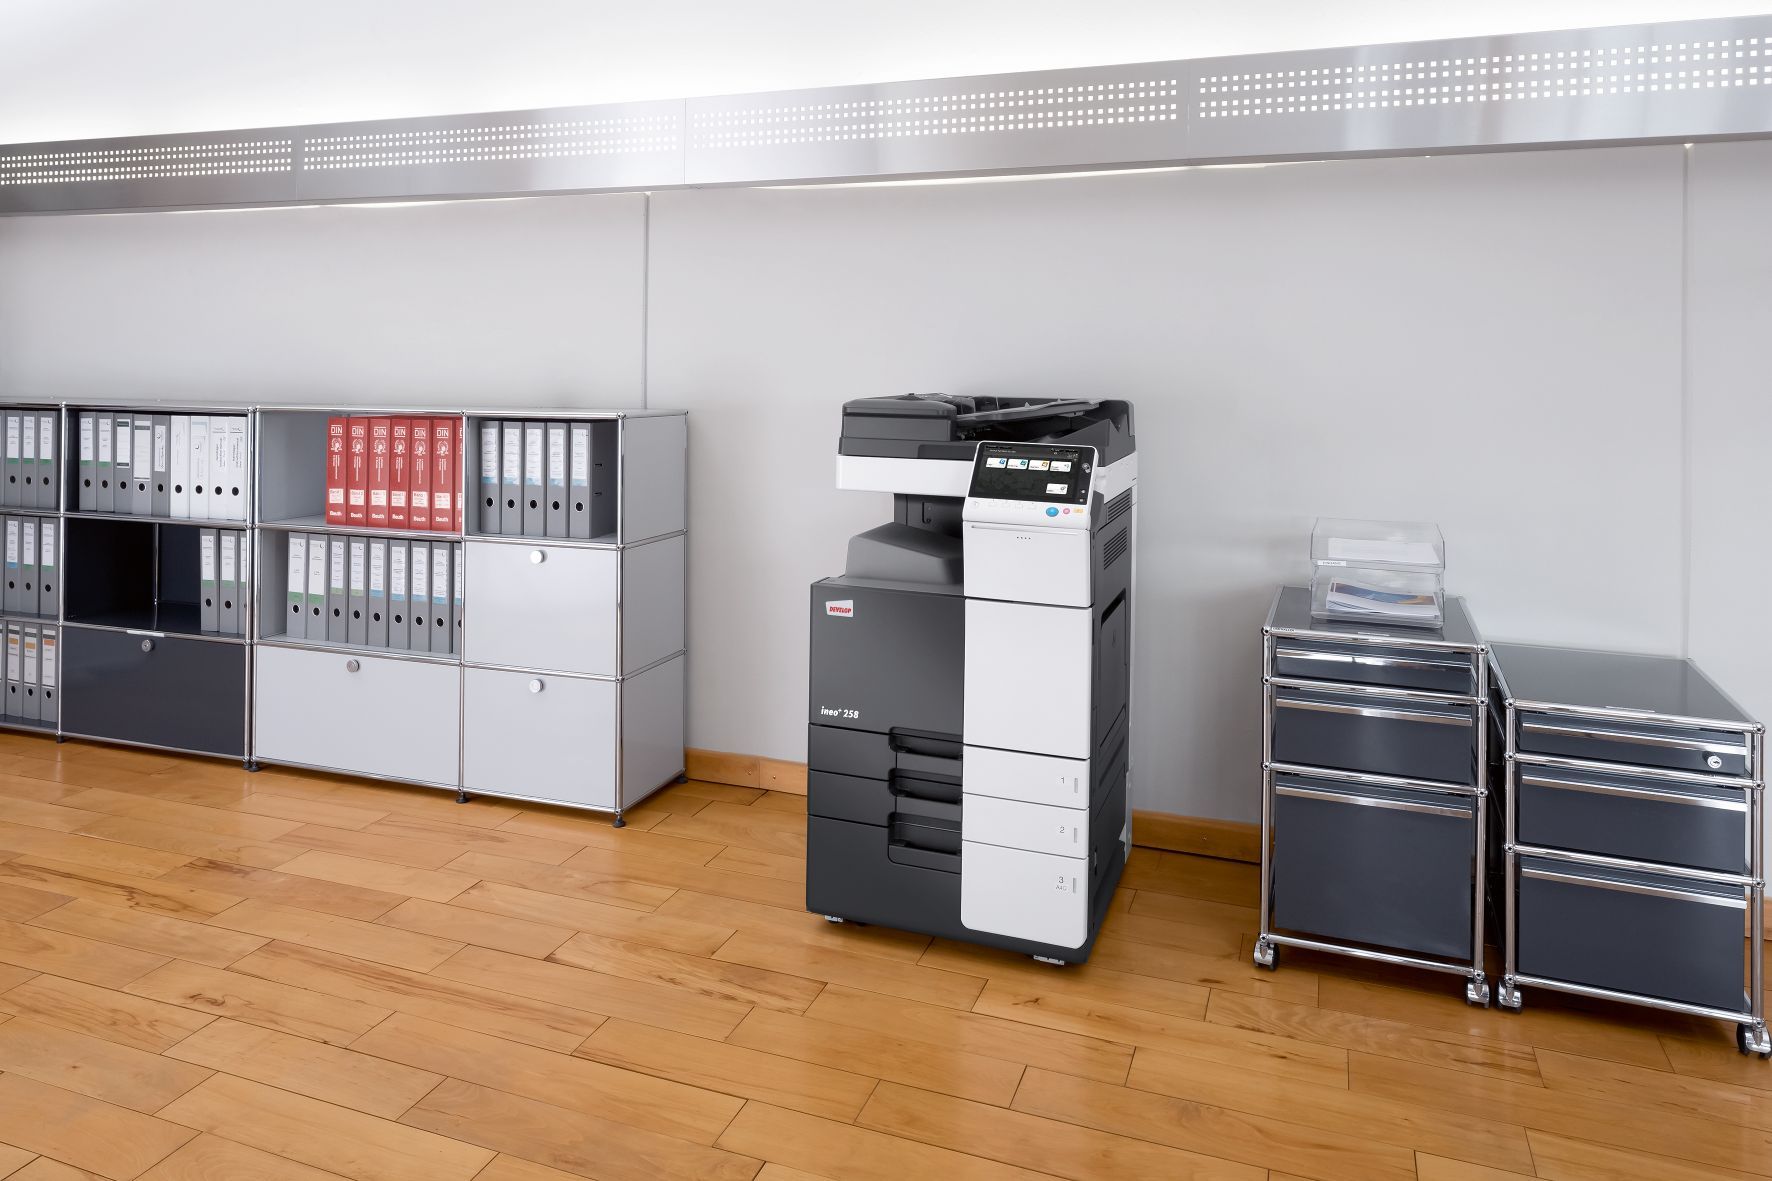 Køb brugte kopimaskiner hos Guldfeldt Kontor & Data i Odense.